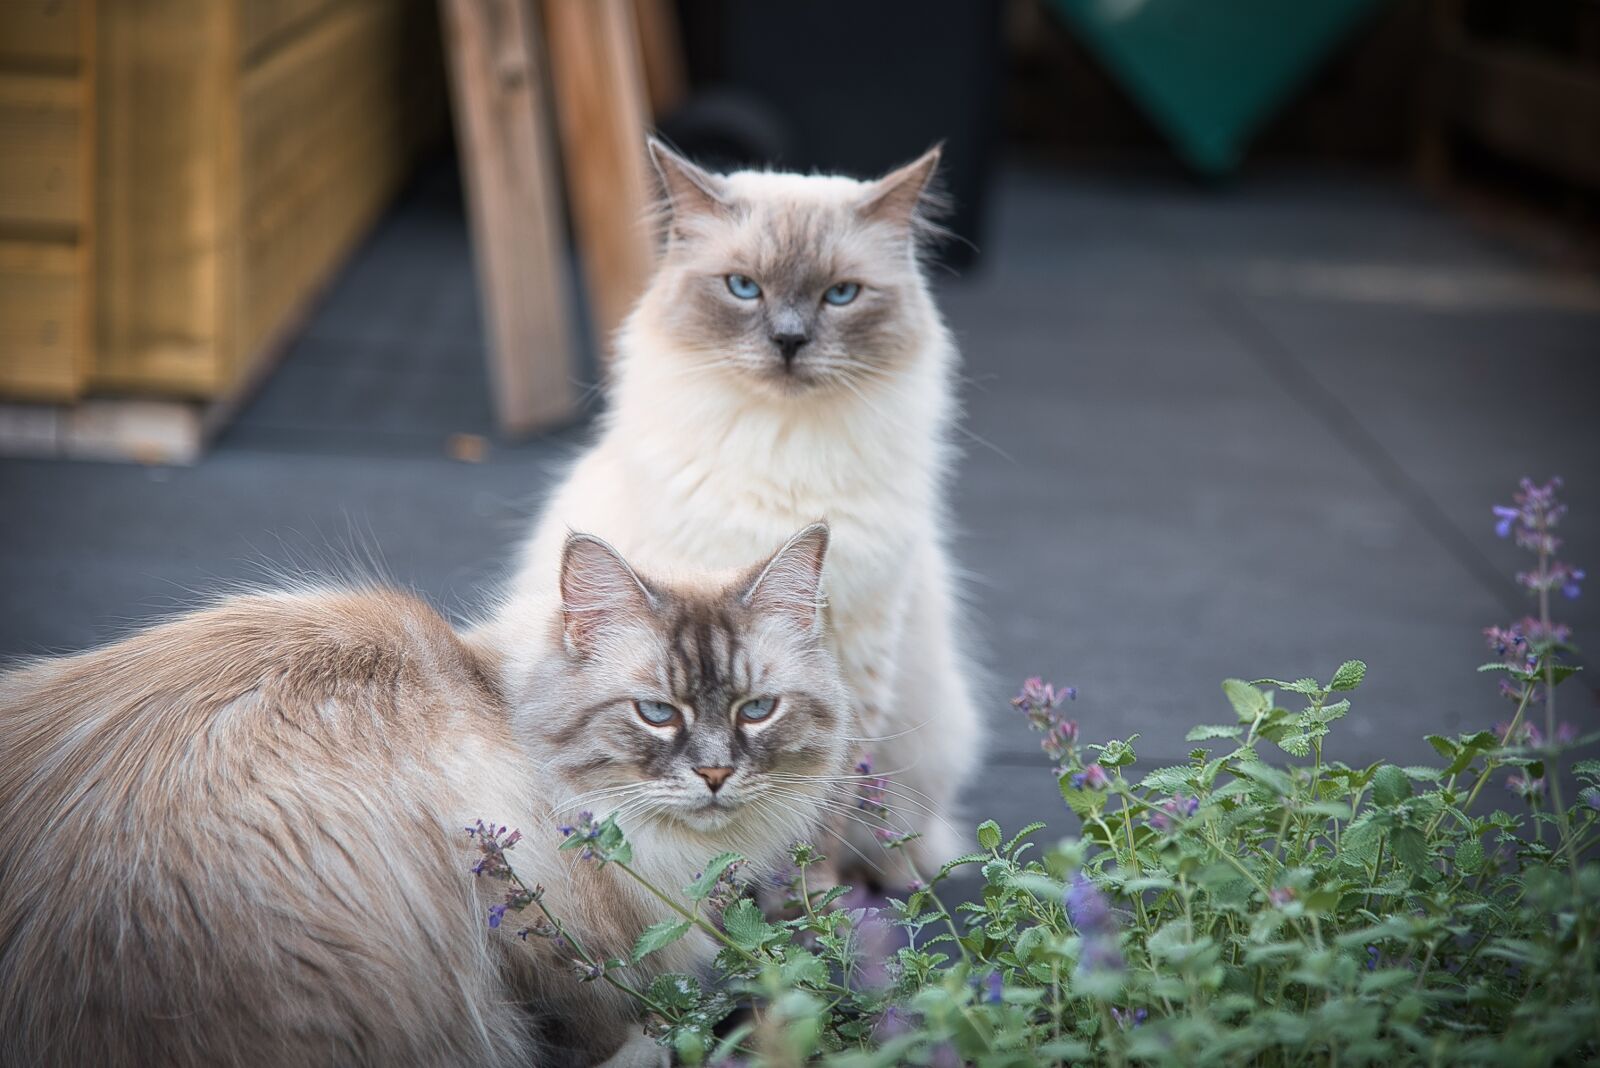 Nikon D610 sample photo. Cat, garden, pet photography